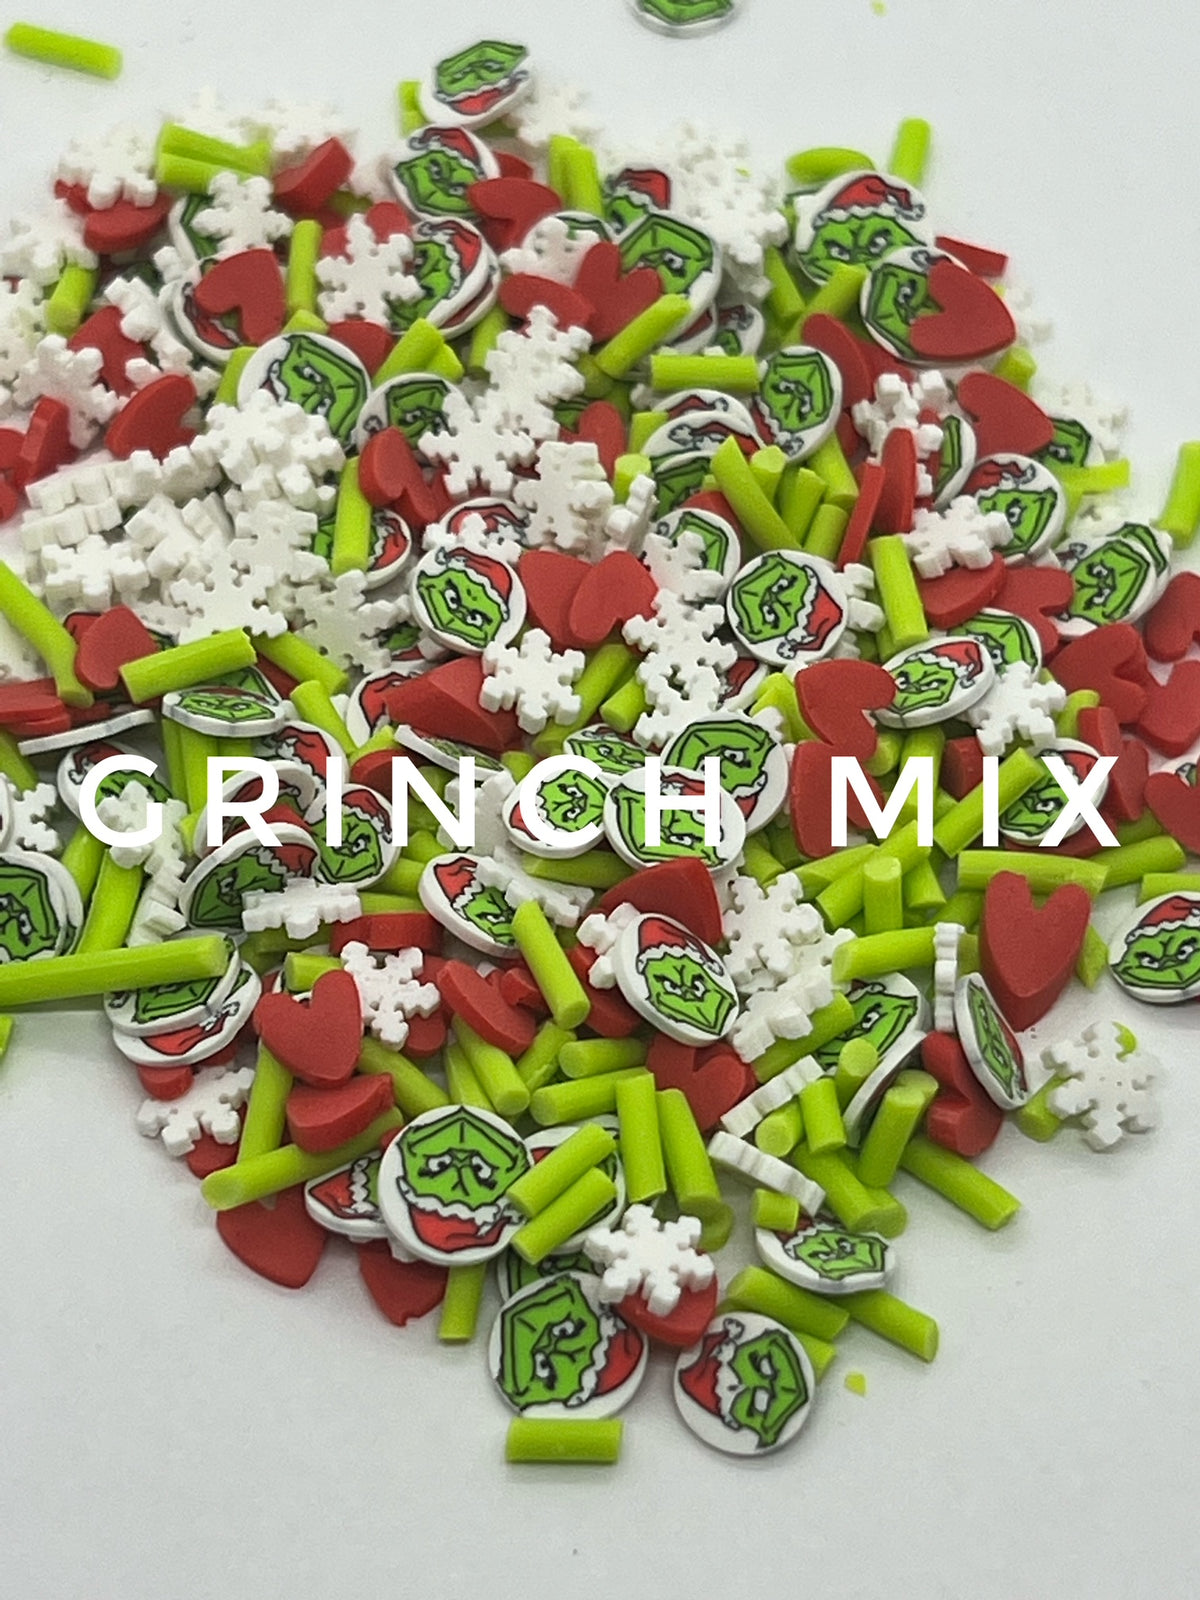 Grinch Mix